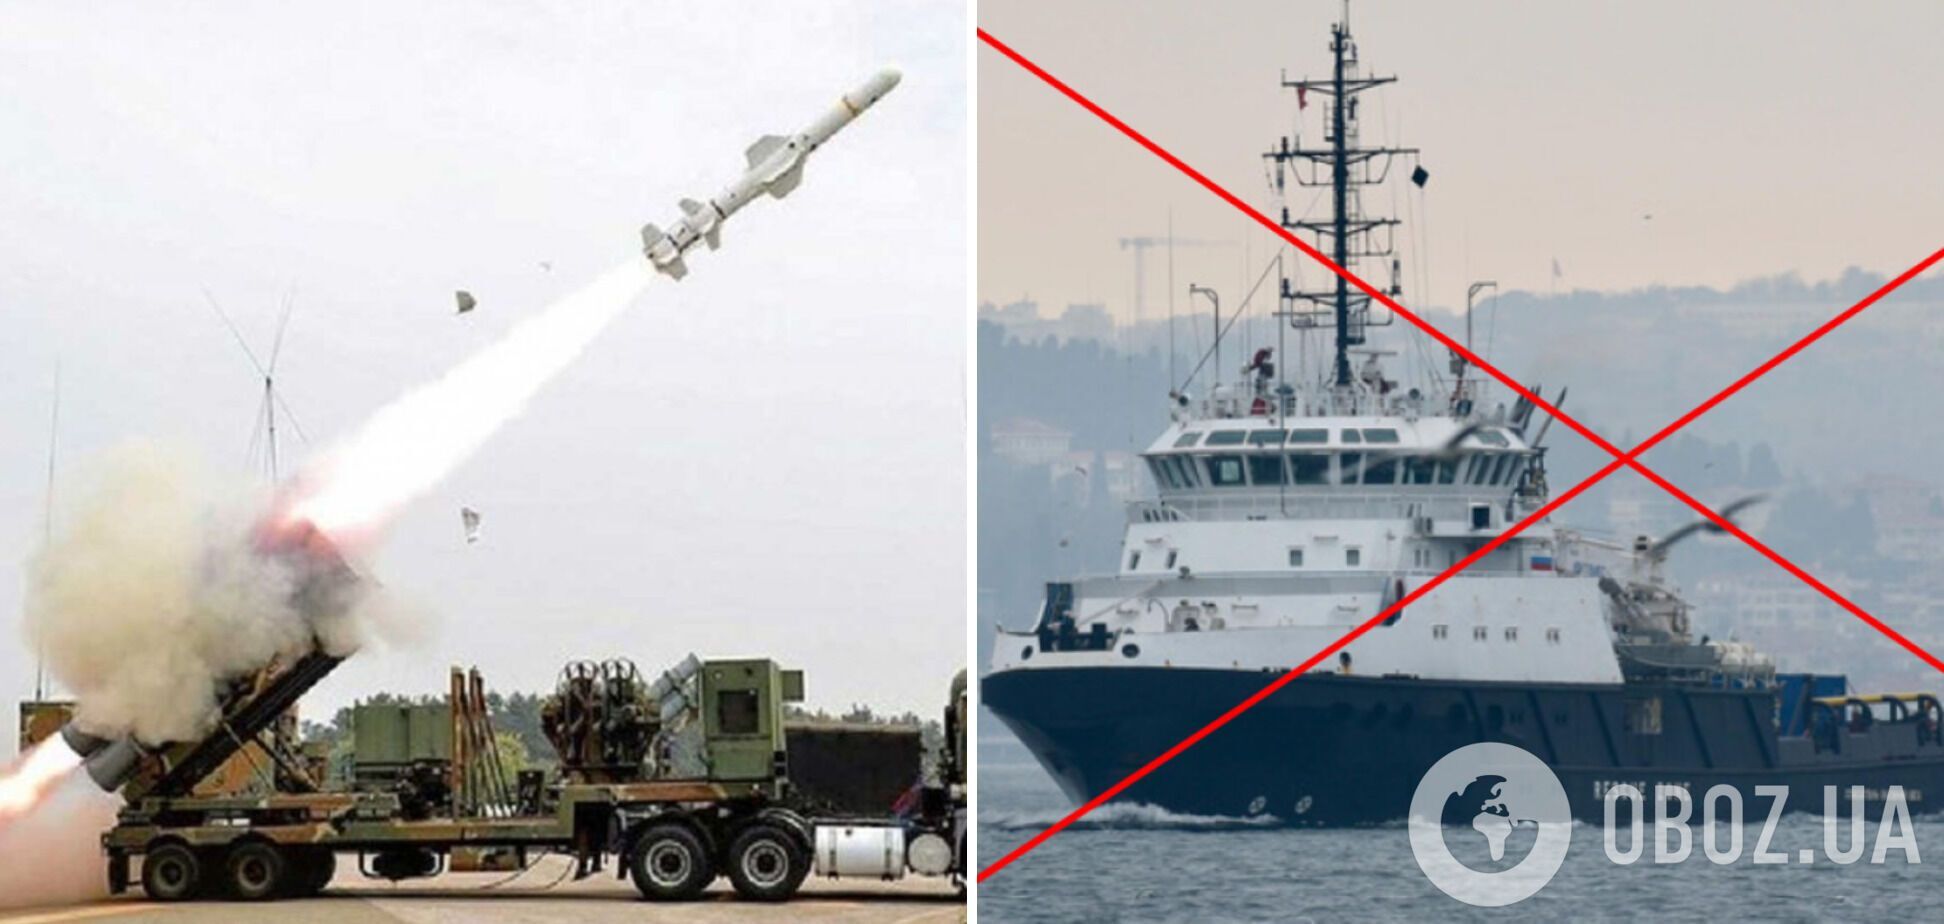 Российский корабль 'Василий Бех' потопили противокорабельными ракетами Harpoon